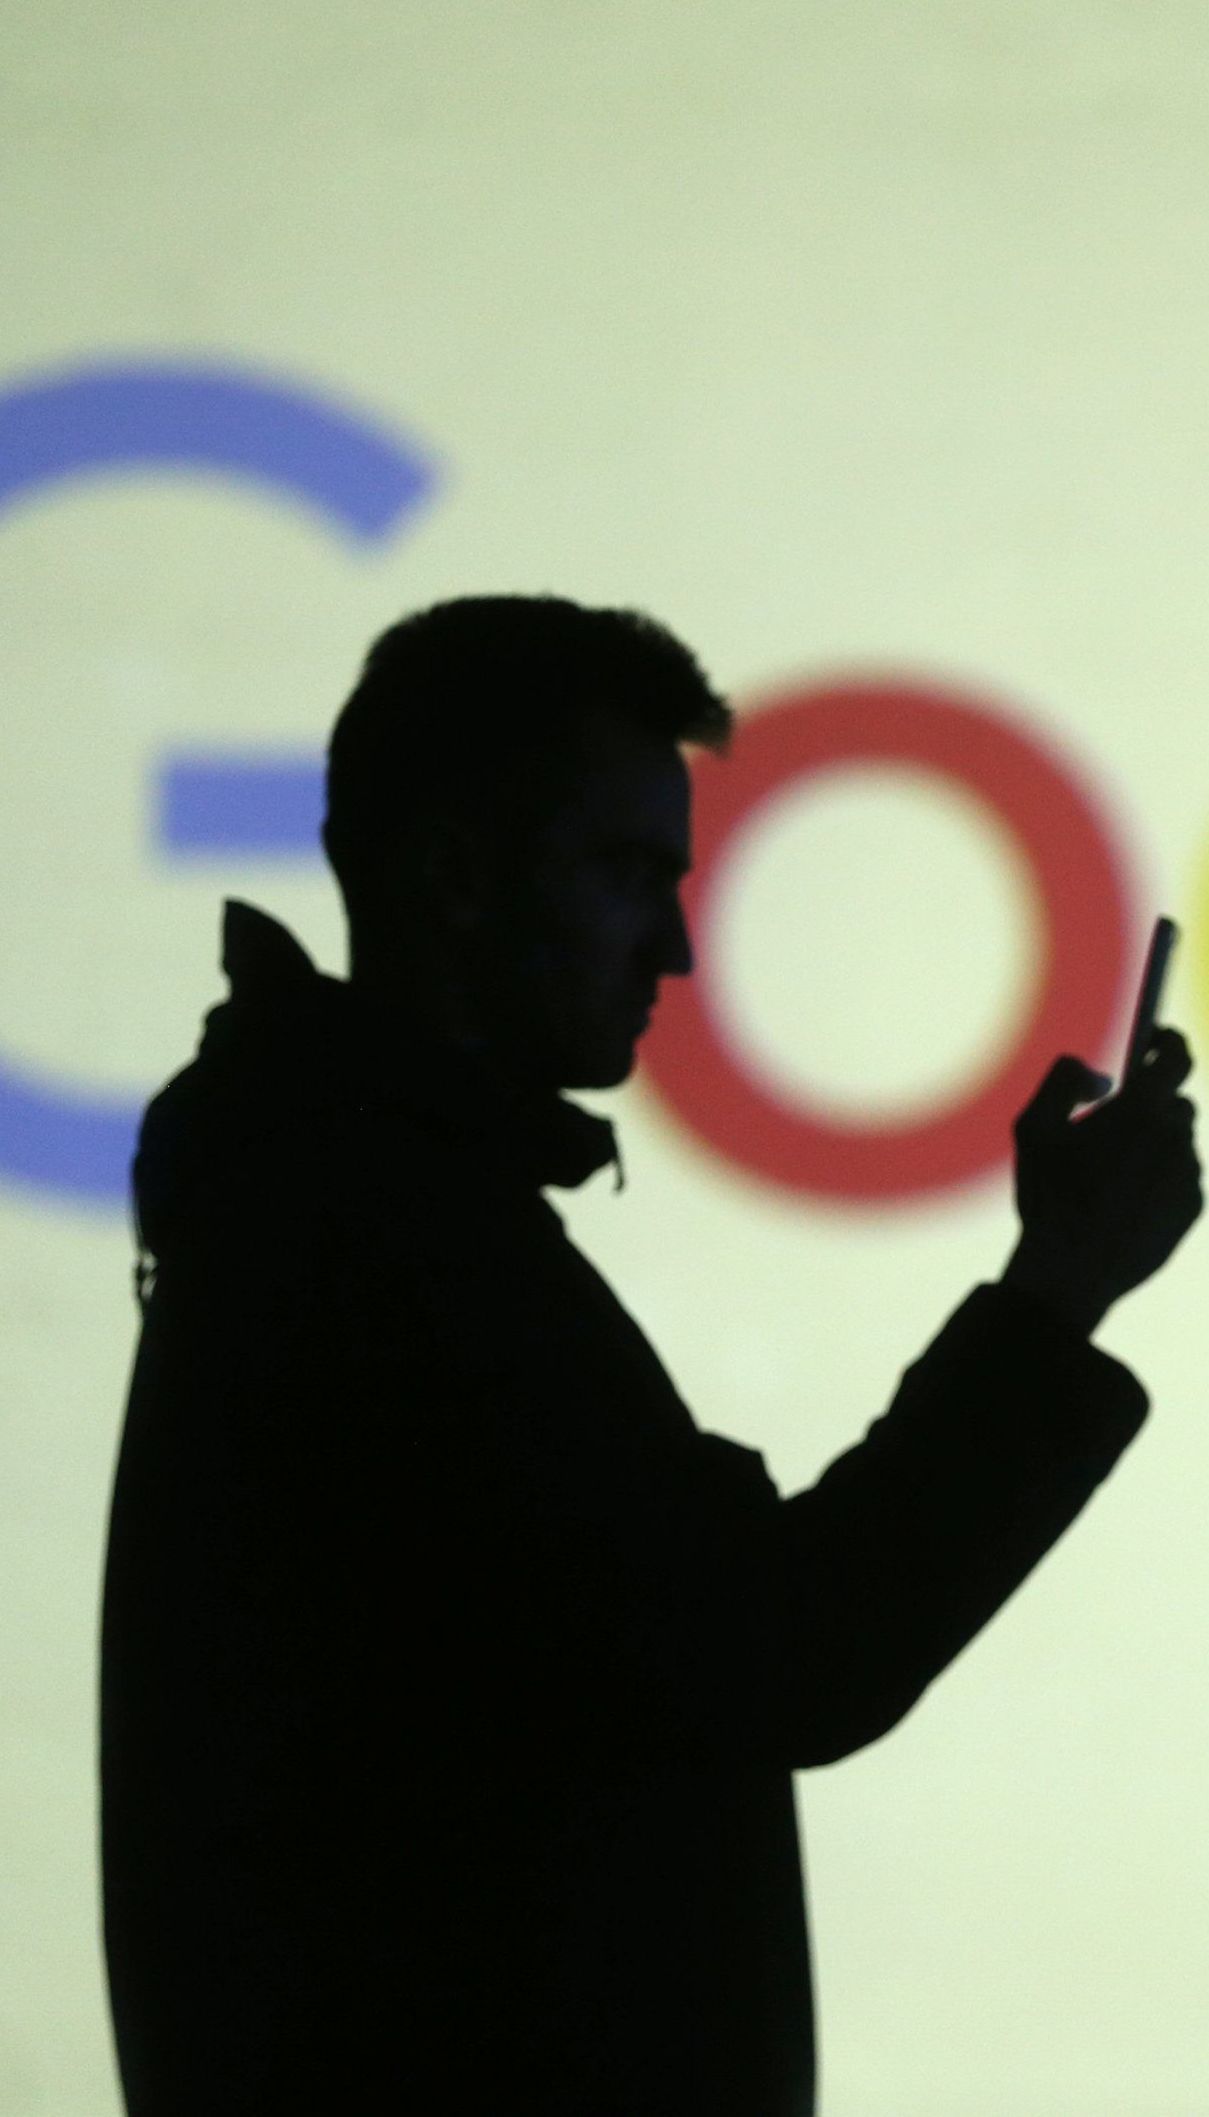 Близько десяти співробітників Google звільнилися через співпрацю компанії з Пентагоном - ЗМІ